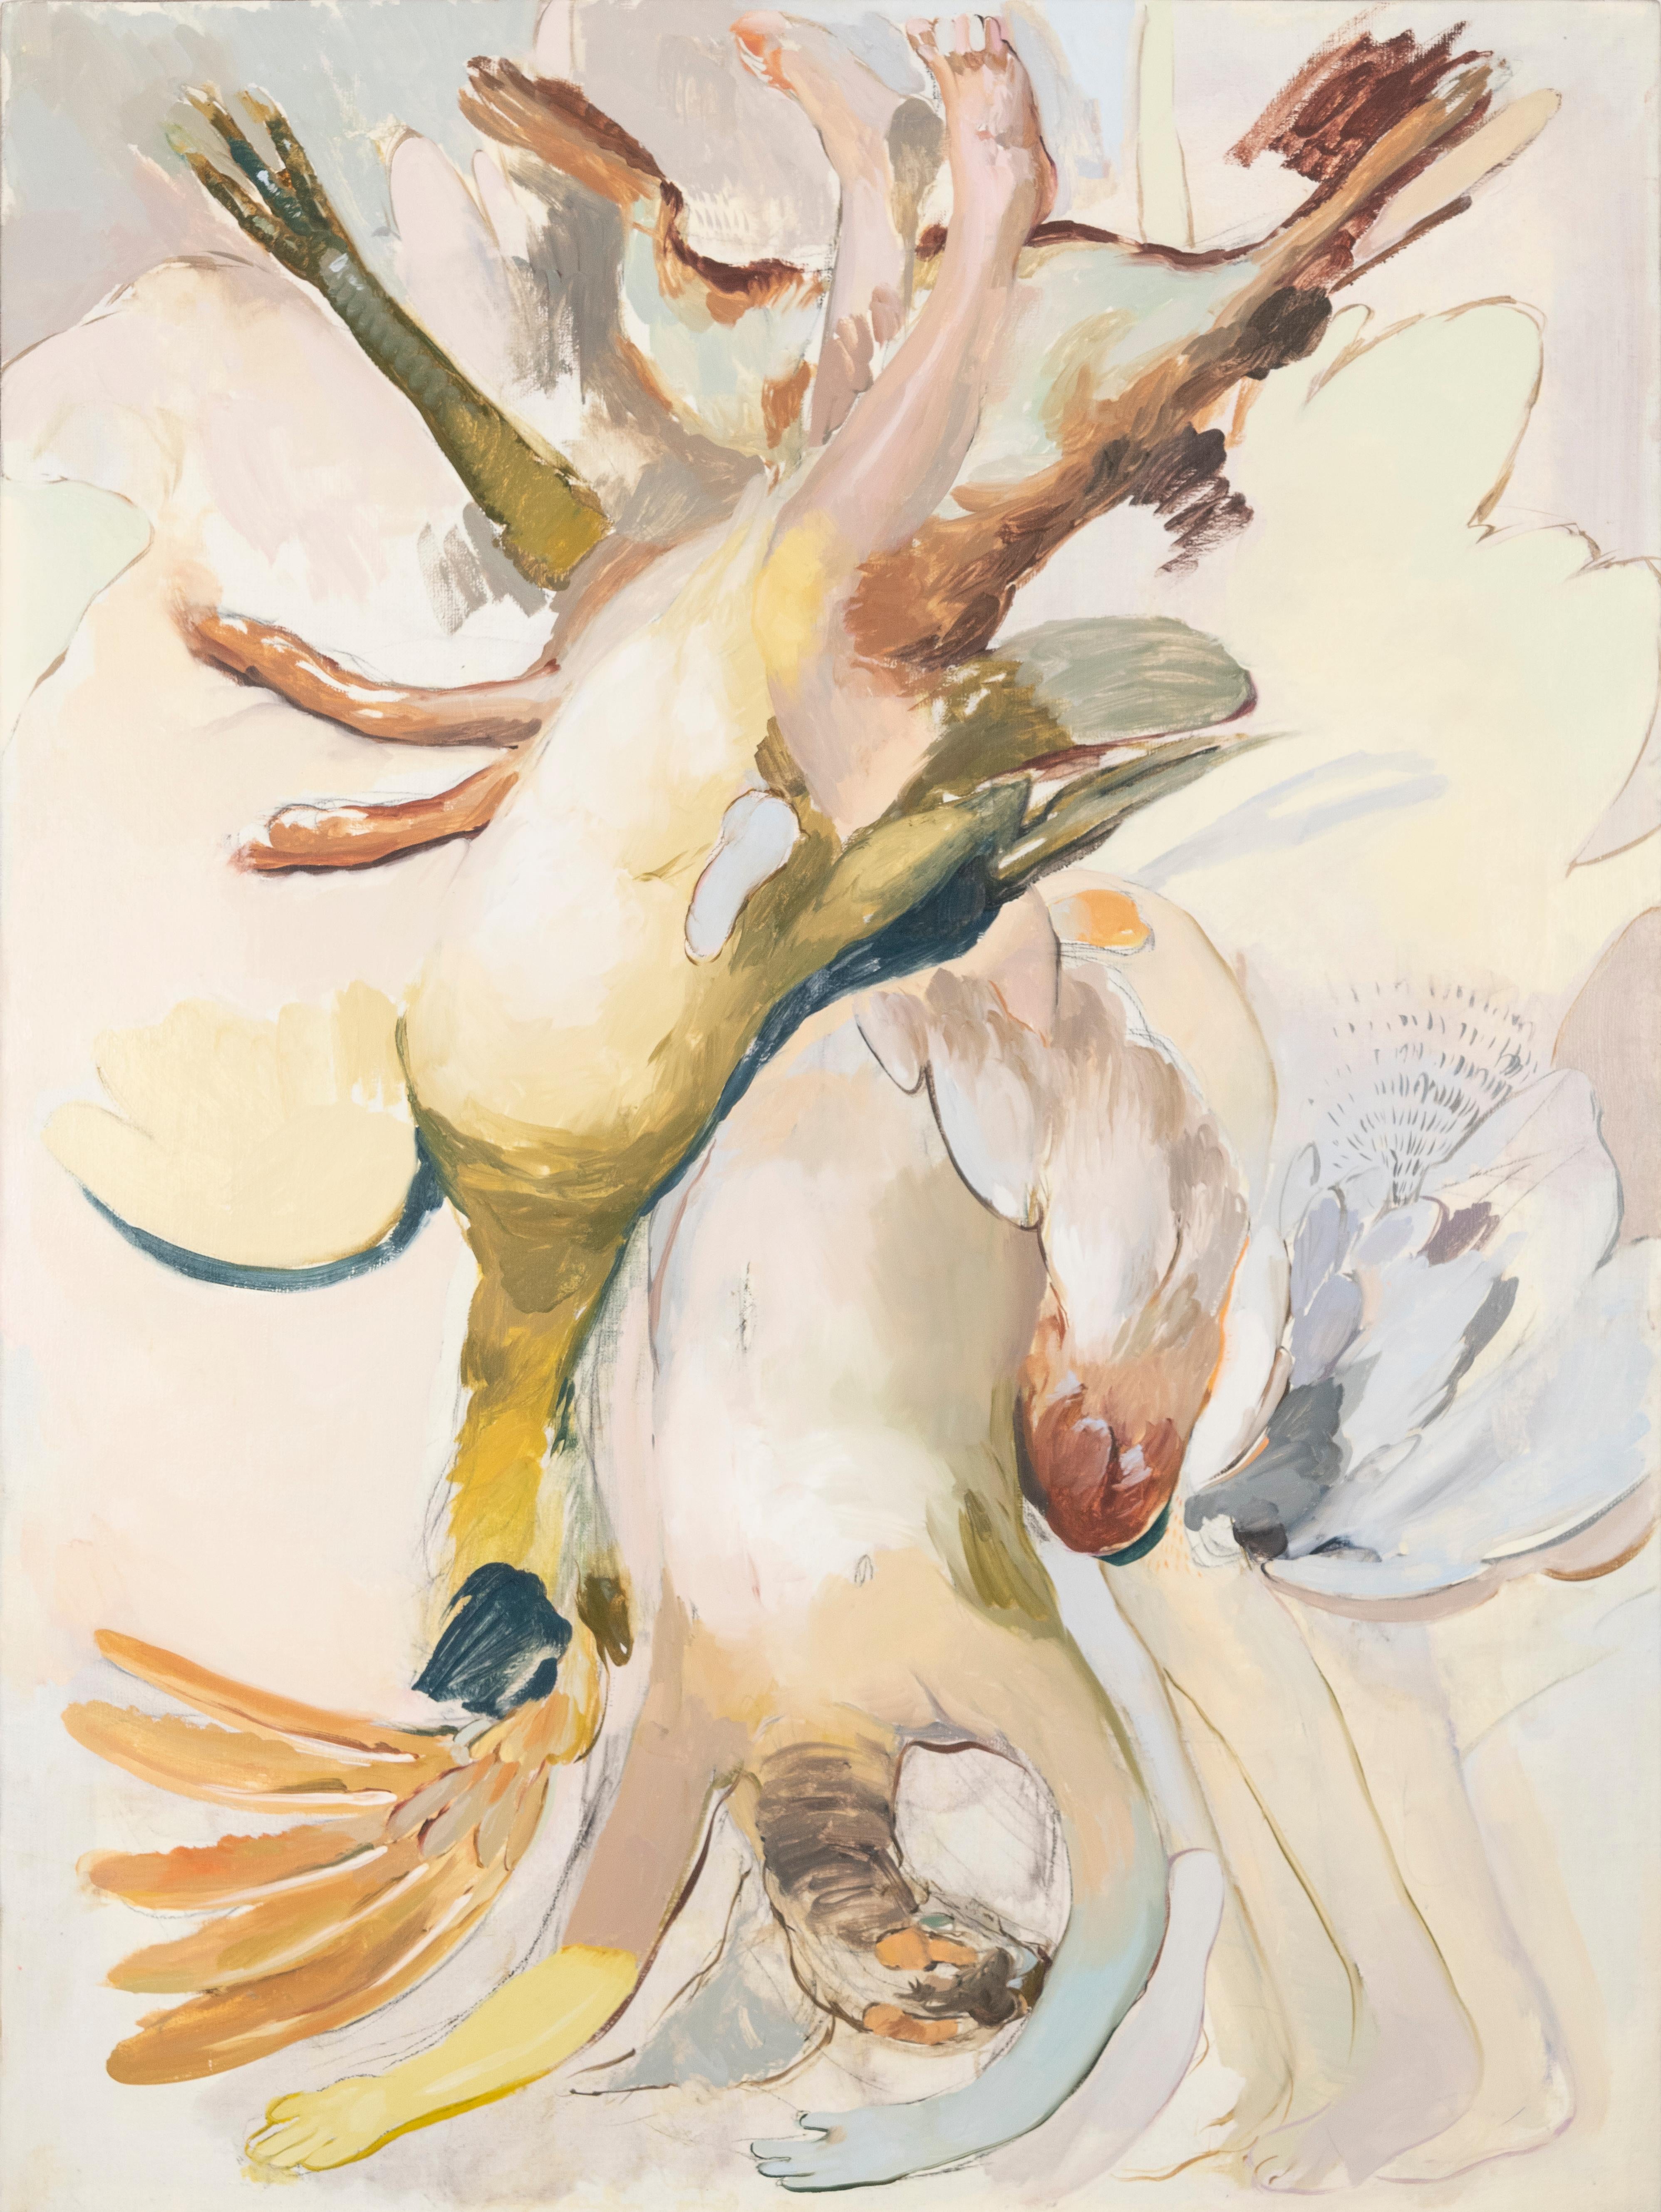 Panejos and cojaros with legs VI/ figurative birds, contemporary art